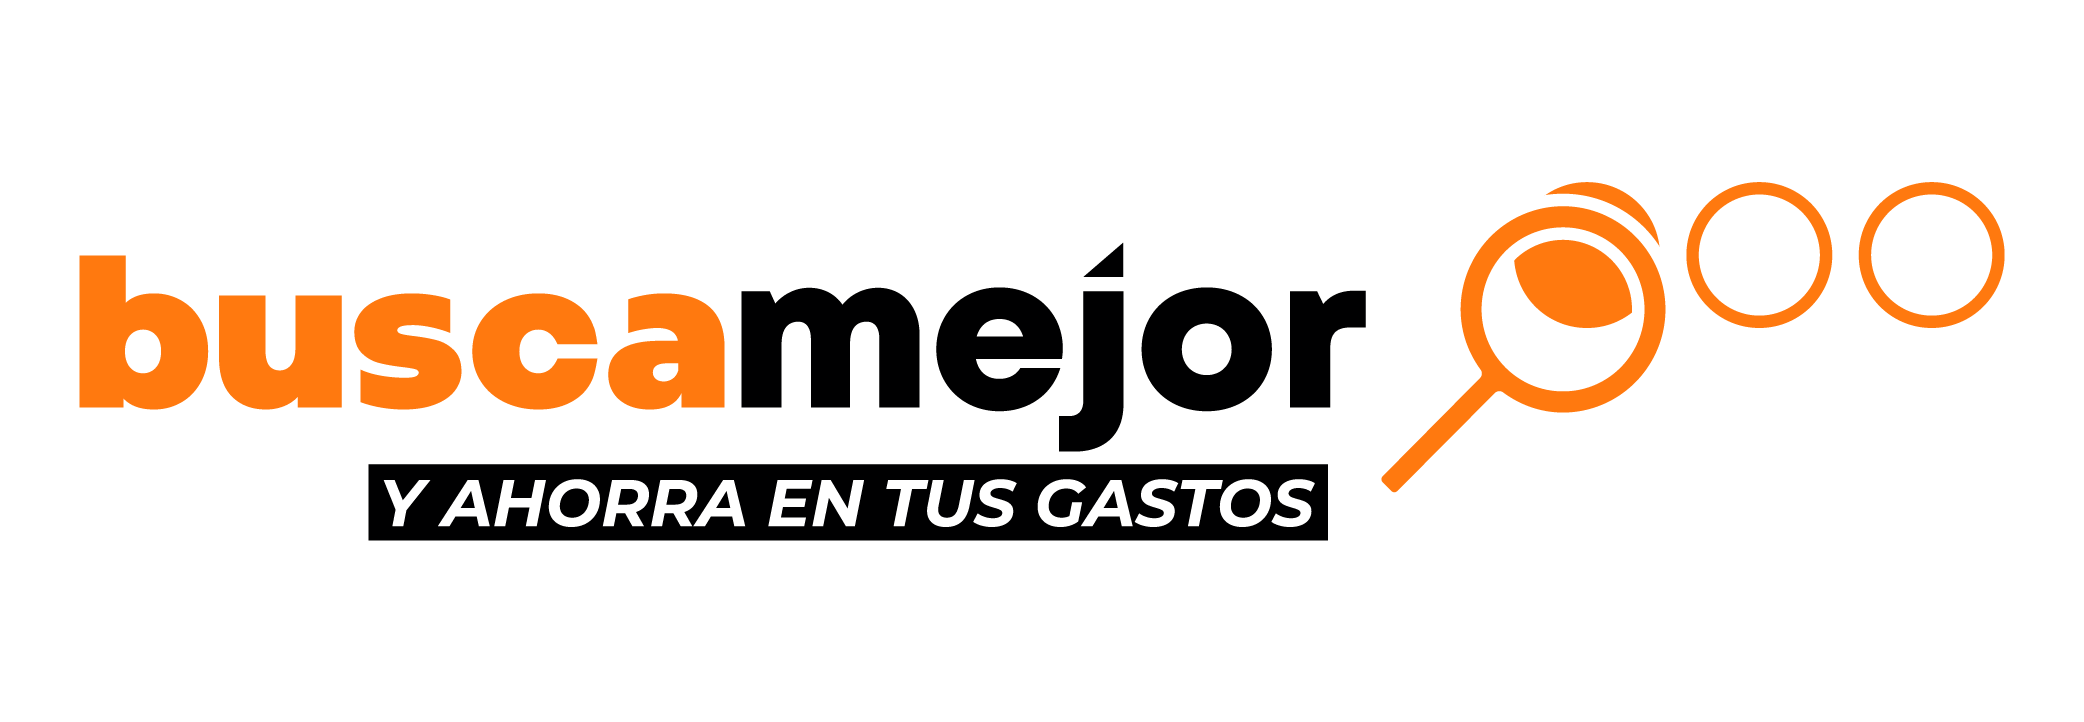 Logo Confianza y ahorro